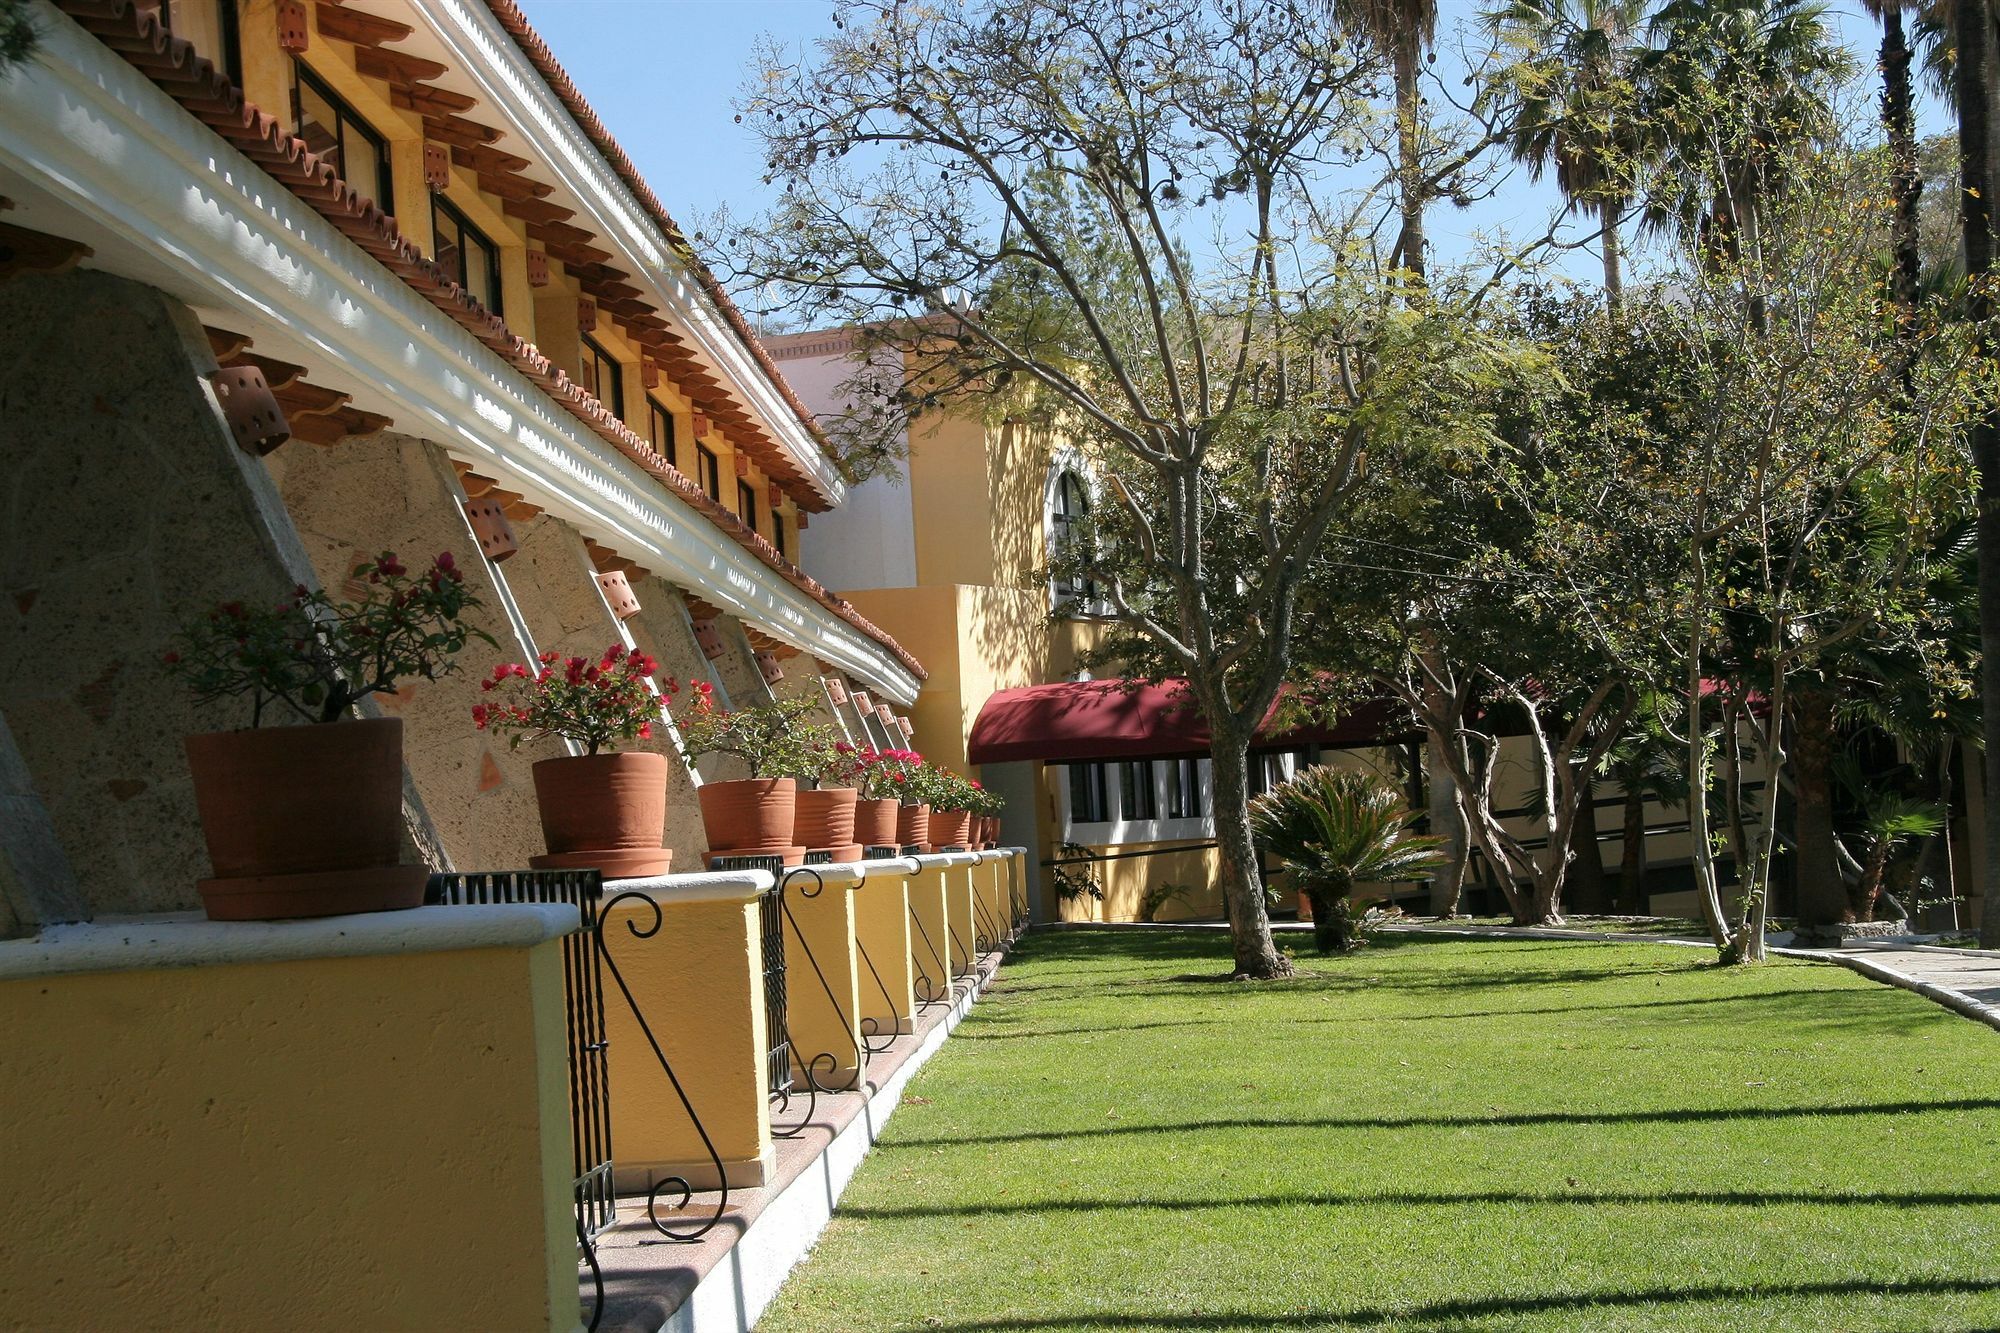 Mision Comanjilla Ξενοδοχείο Εξωτερικό φωτογραφία